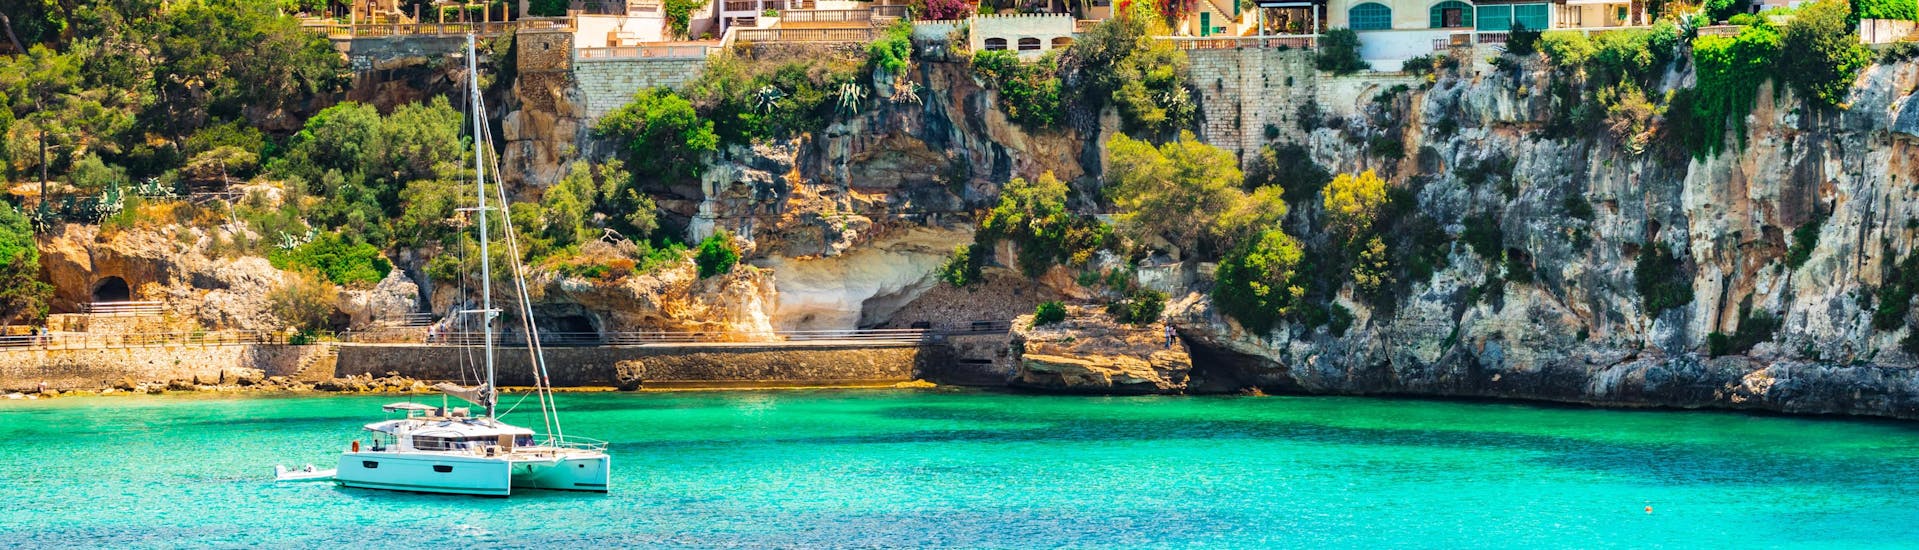 Ein Katamaran in der Bucht von Monte Cristo, die ein beliebter Ausgangspunkt für Bootstouren entlang der Ostküste Mallorcas ist.